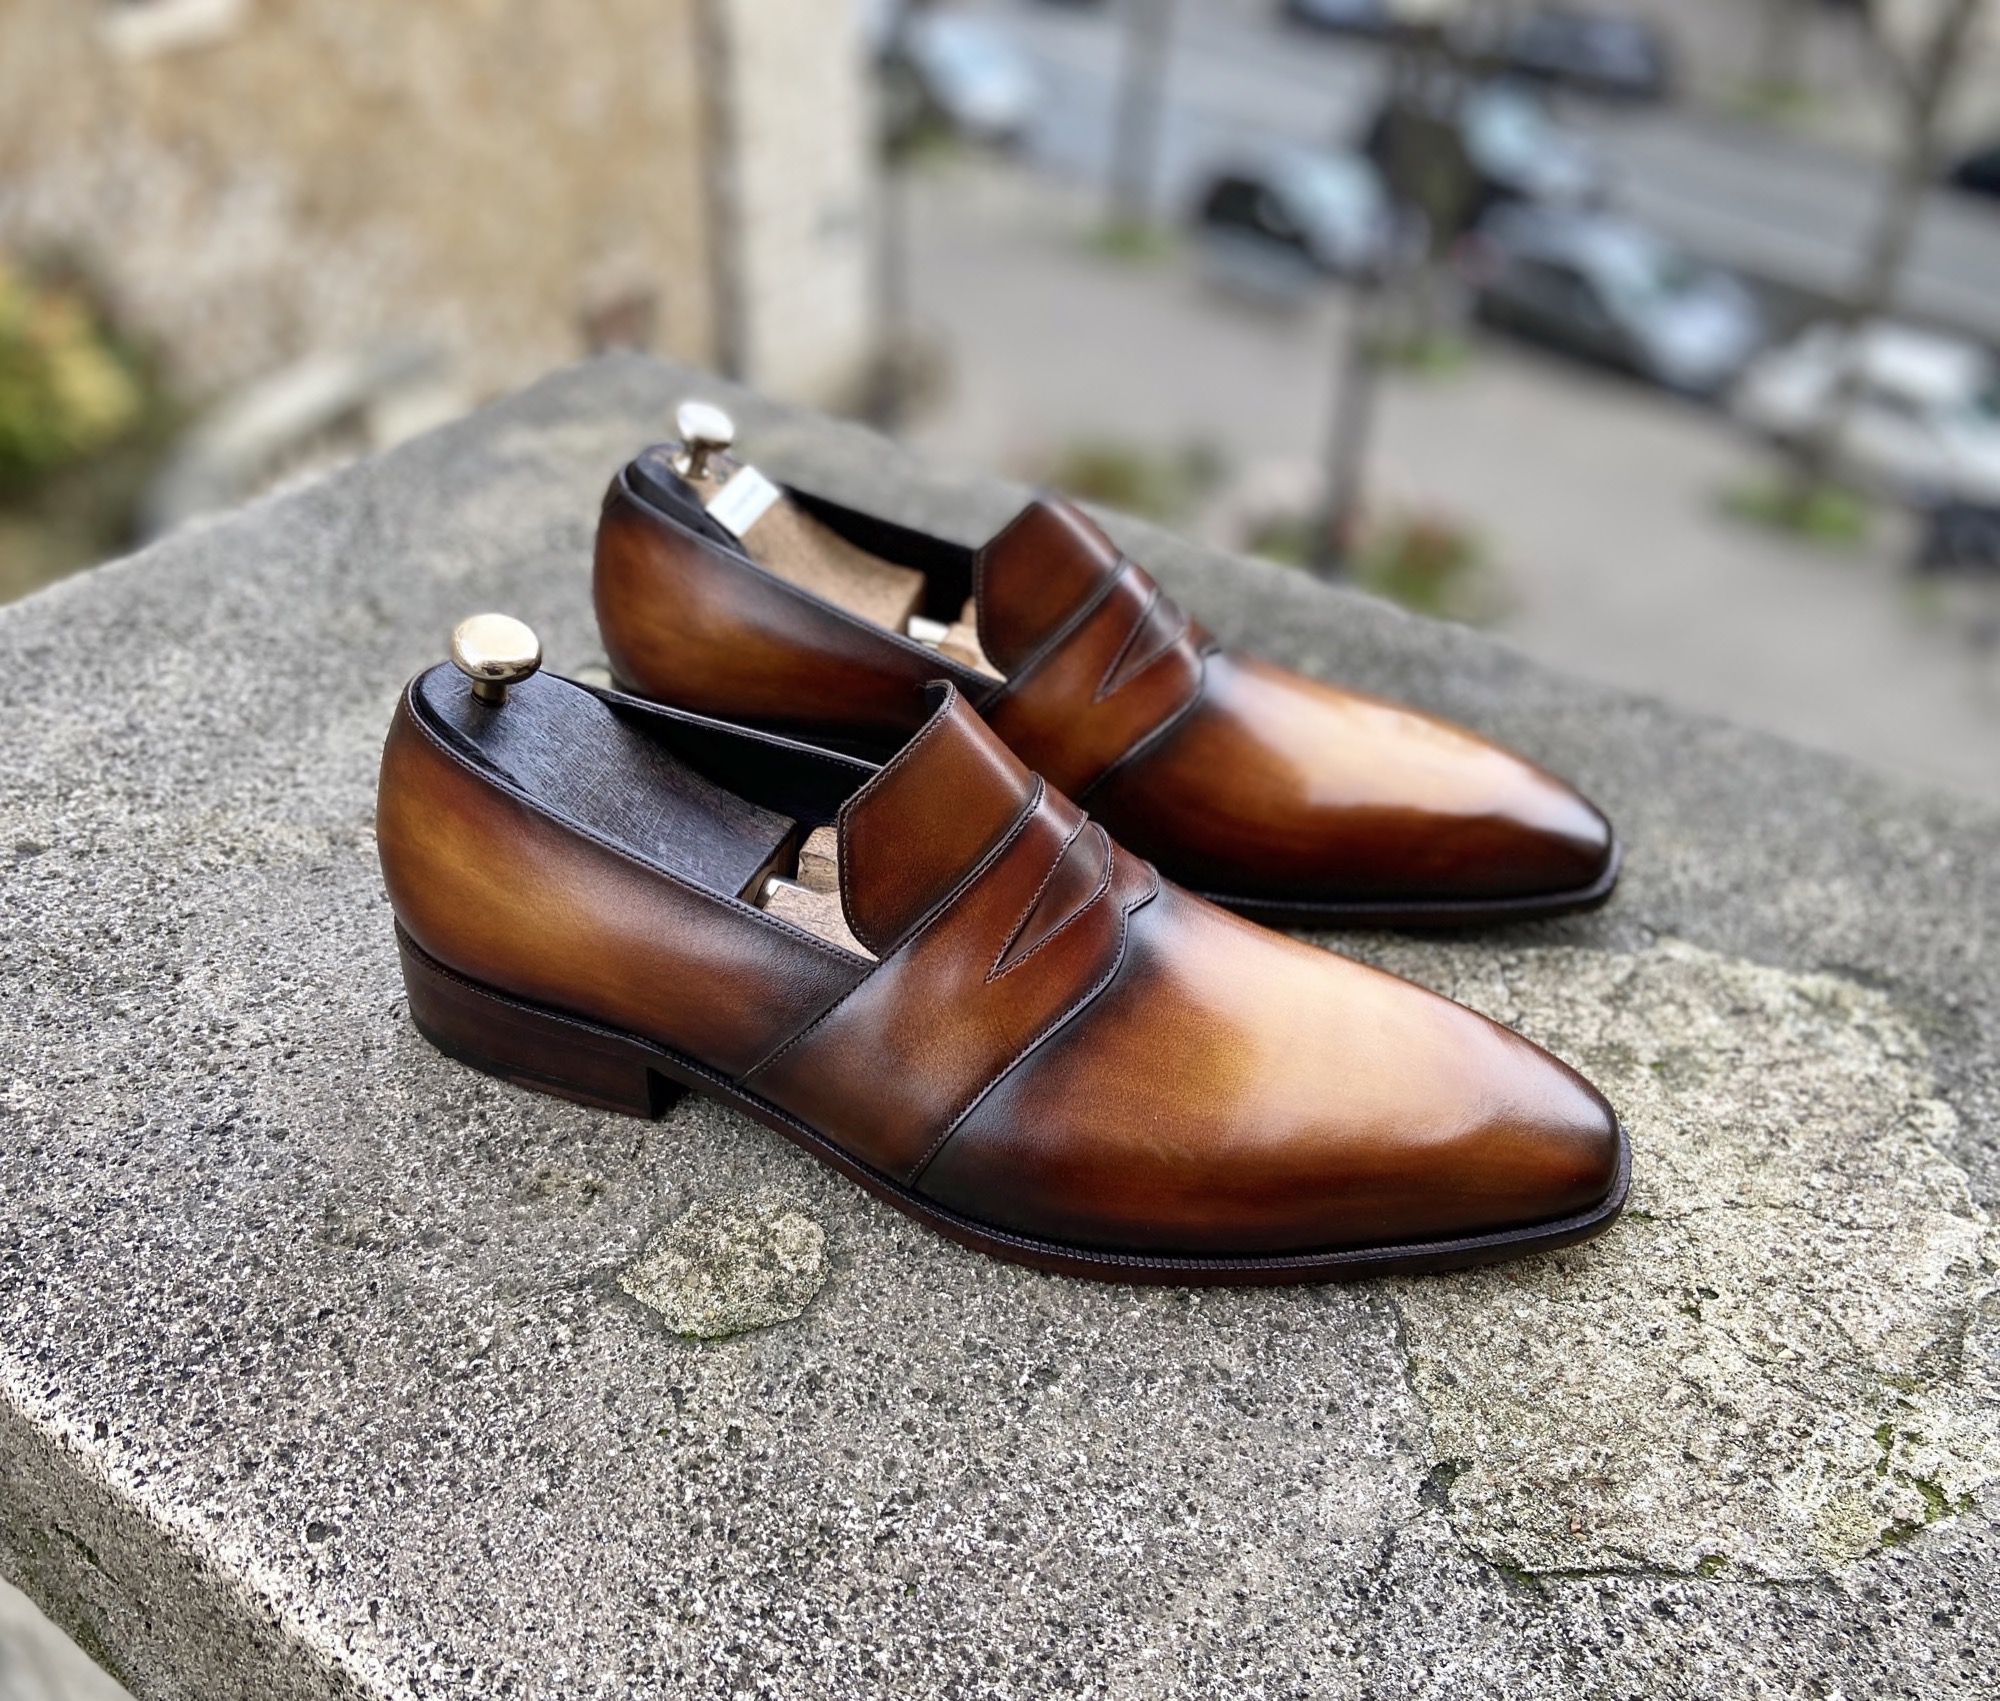 Patch landlord Contain Caesar 2 : Dressed Shoes - Caulaincourt Paris